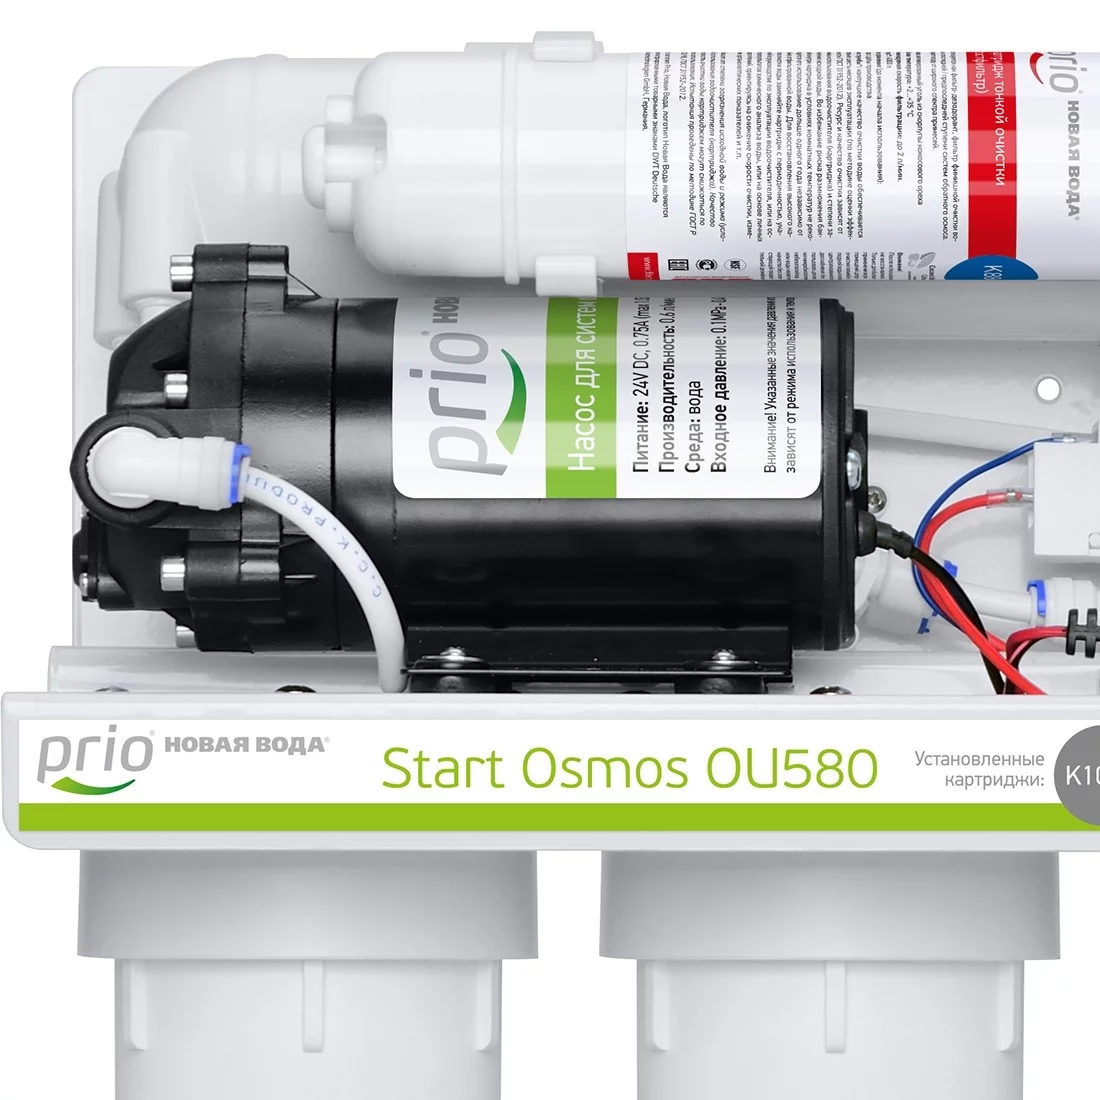 Компания новая вода. Start Osmos ou580. Prio ou580. Prio новая вода start Osmos. Prio новая вода start Osmos ou 580 с повышающим насосом.